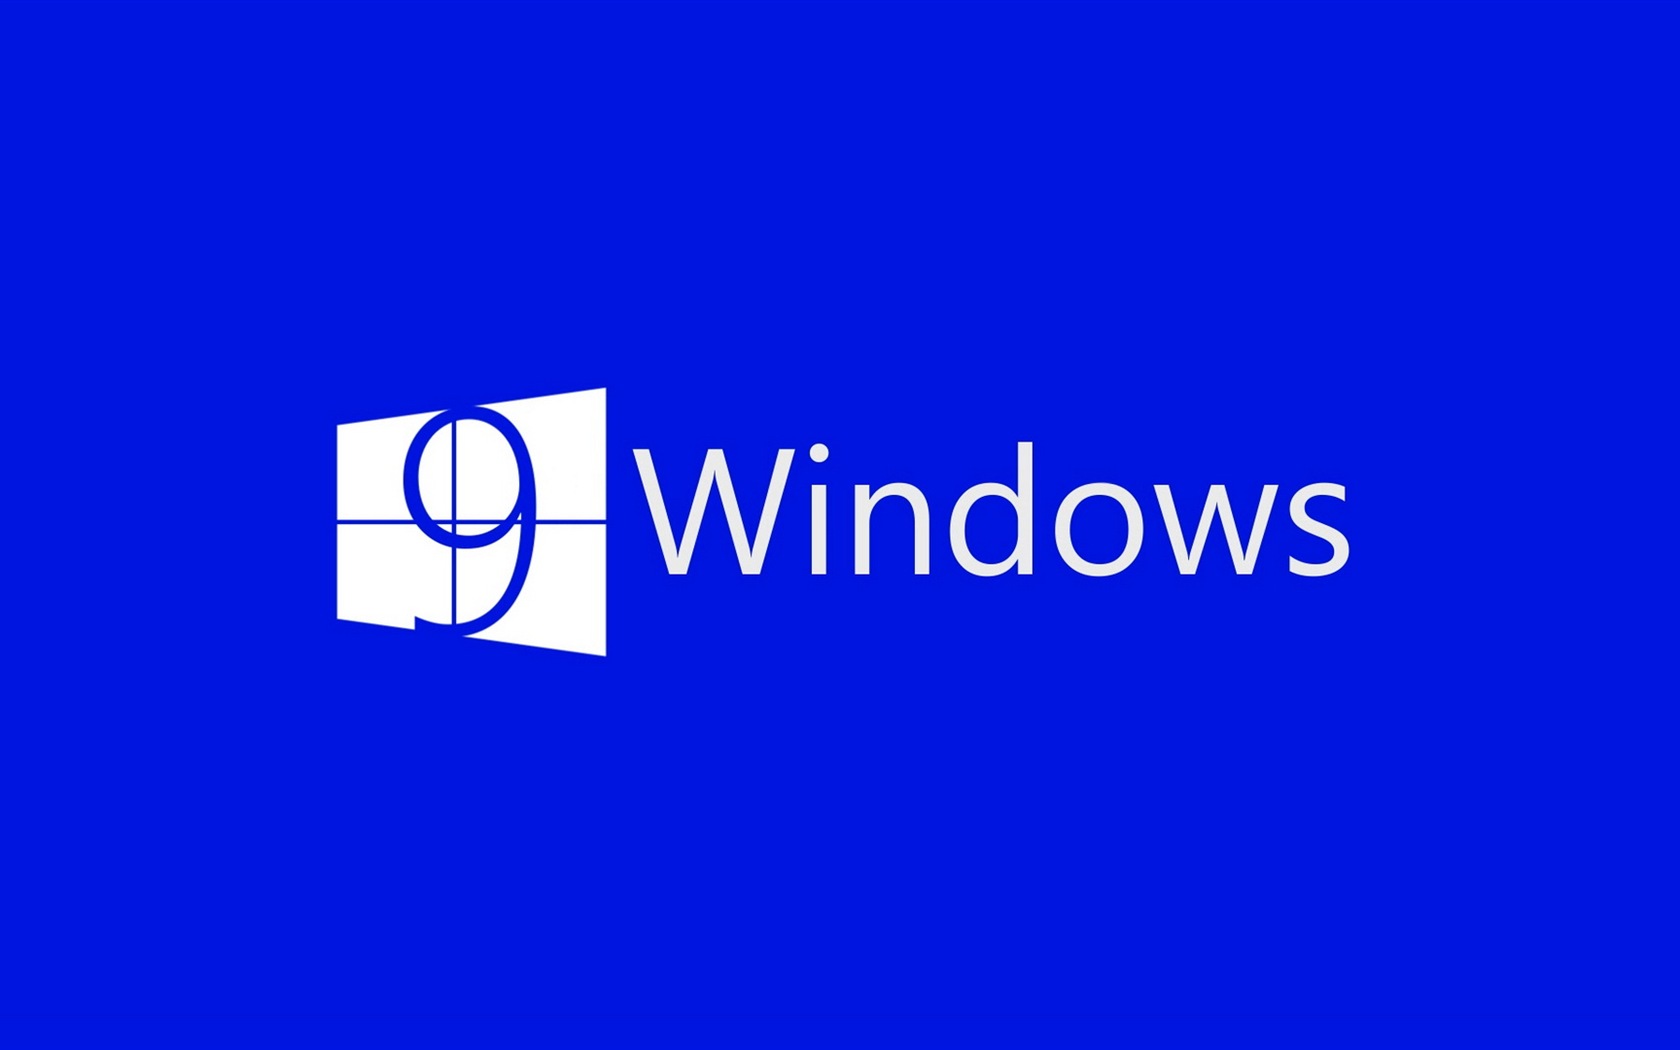 Microsoft Windowsの9システムテーマのHD壁紙 #4 - 1680x1050